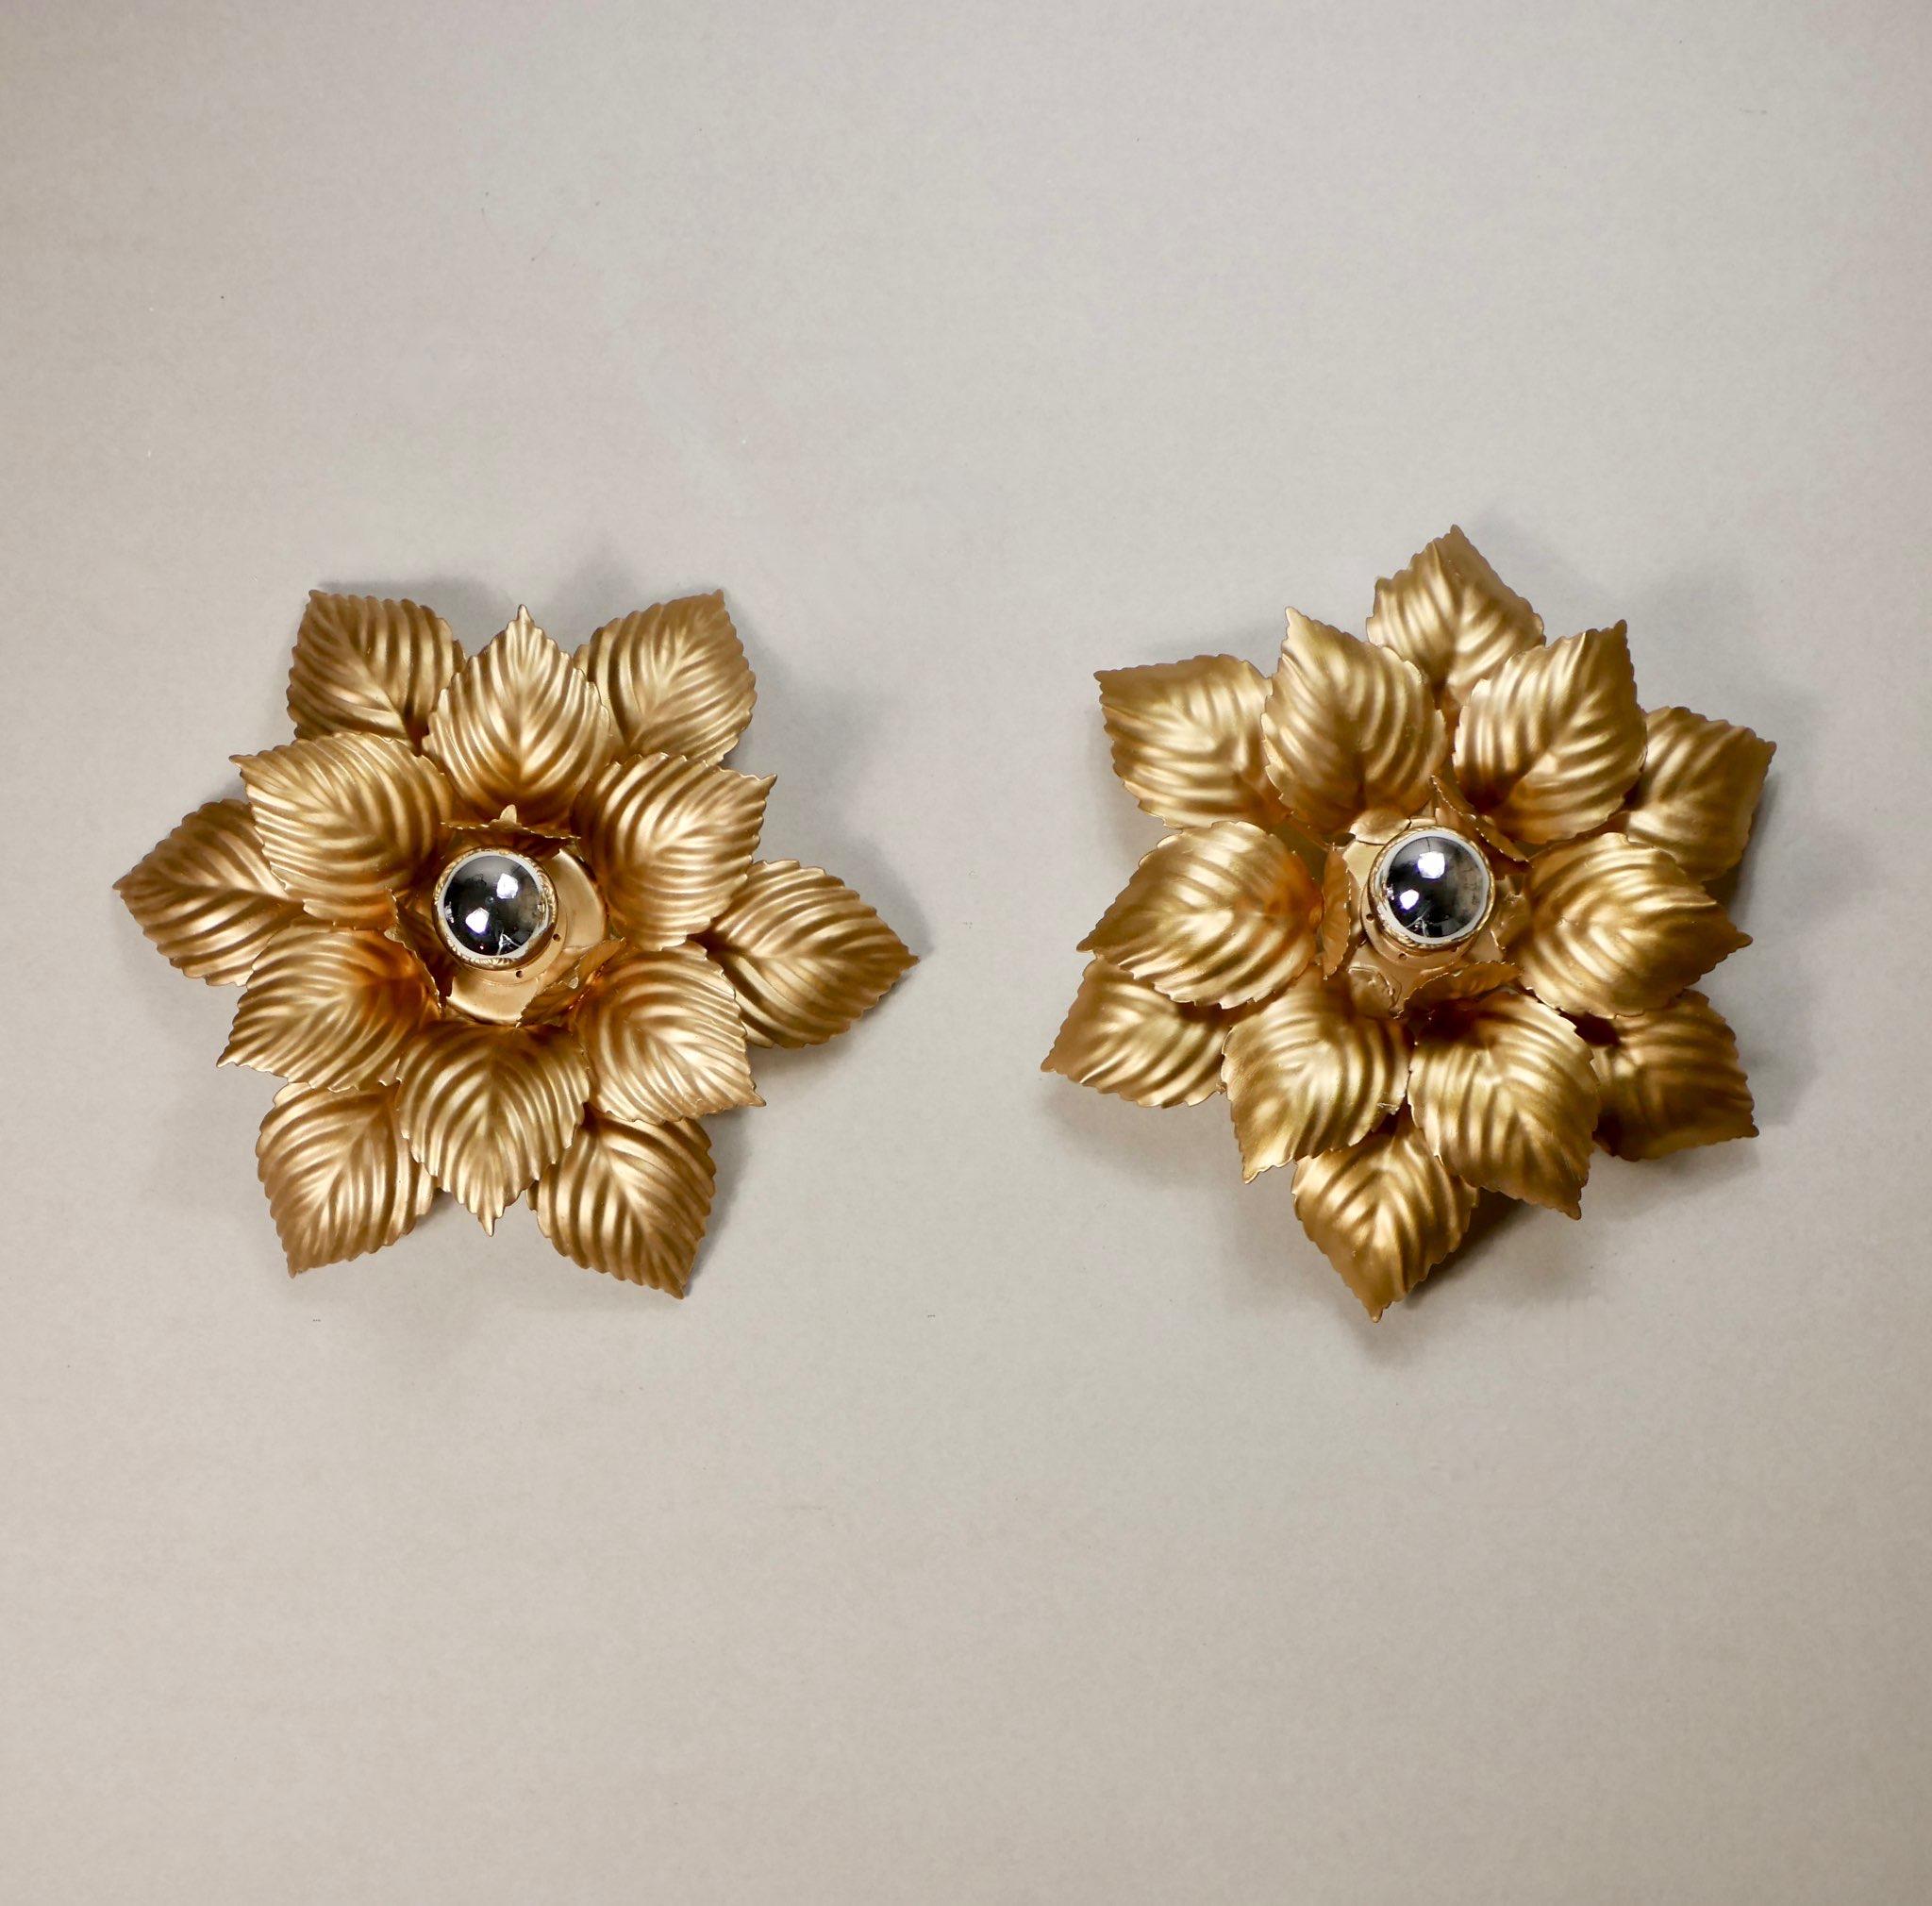 Wunderschönes Paar vergoldeter Blumenleuchter von Masca aus den 1980er Jahren in Italien.
Ein bisschen anders.
Abmessungen: Durchmesser 40cm, Tiefe 14cm